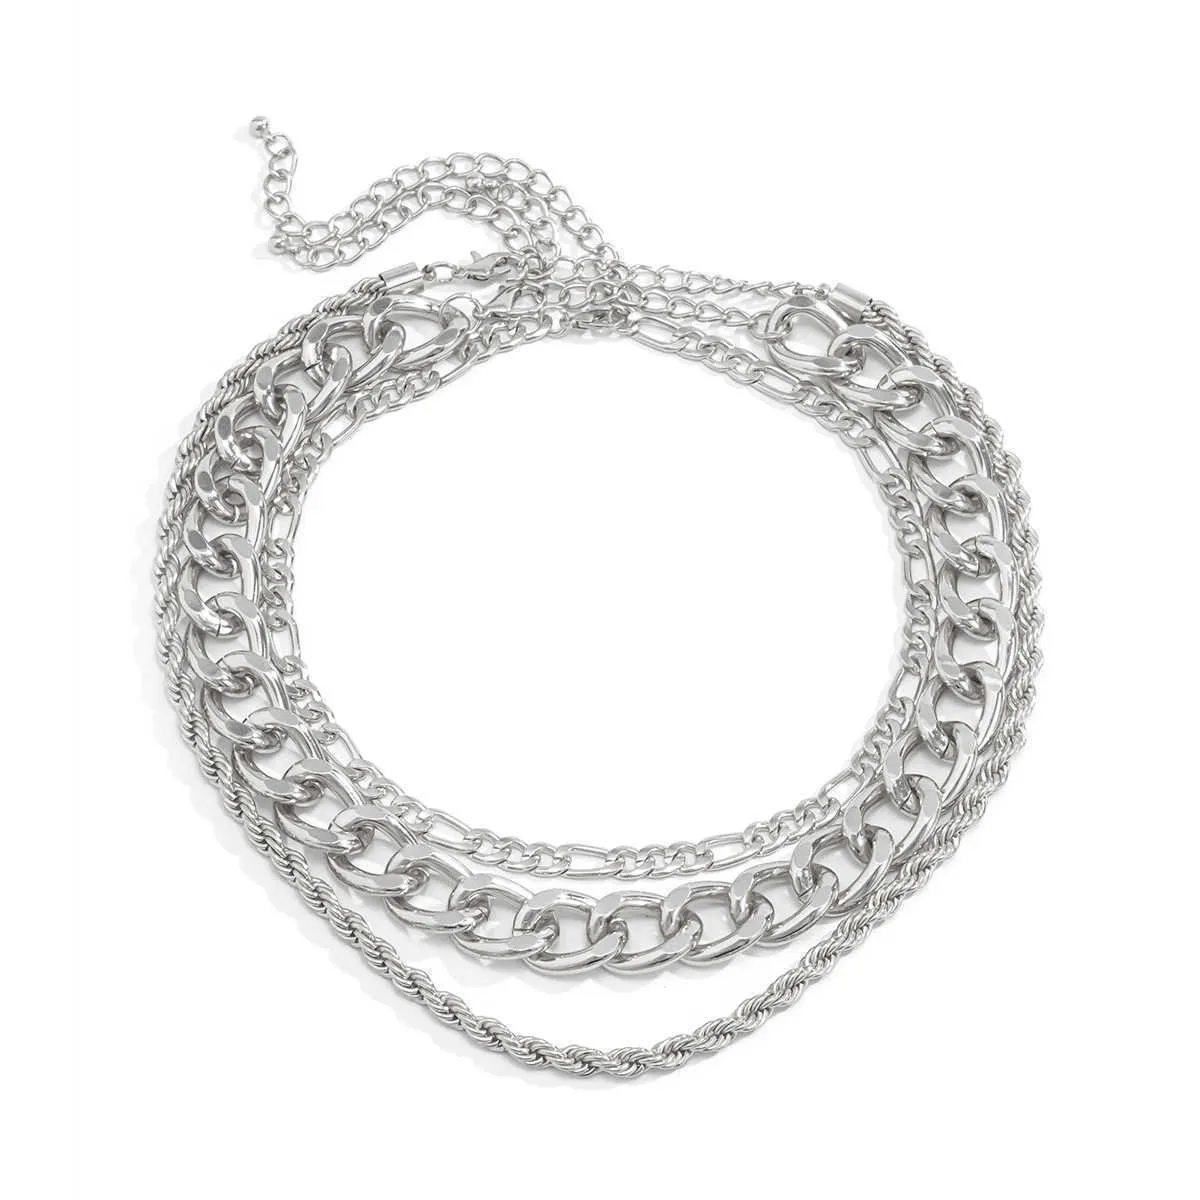 3шт кубинская цепная цепочка цепь цепи ожерелье золотое серебро цвет колье для женщин девочек ювелирные изделия Q0809